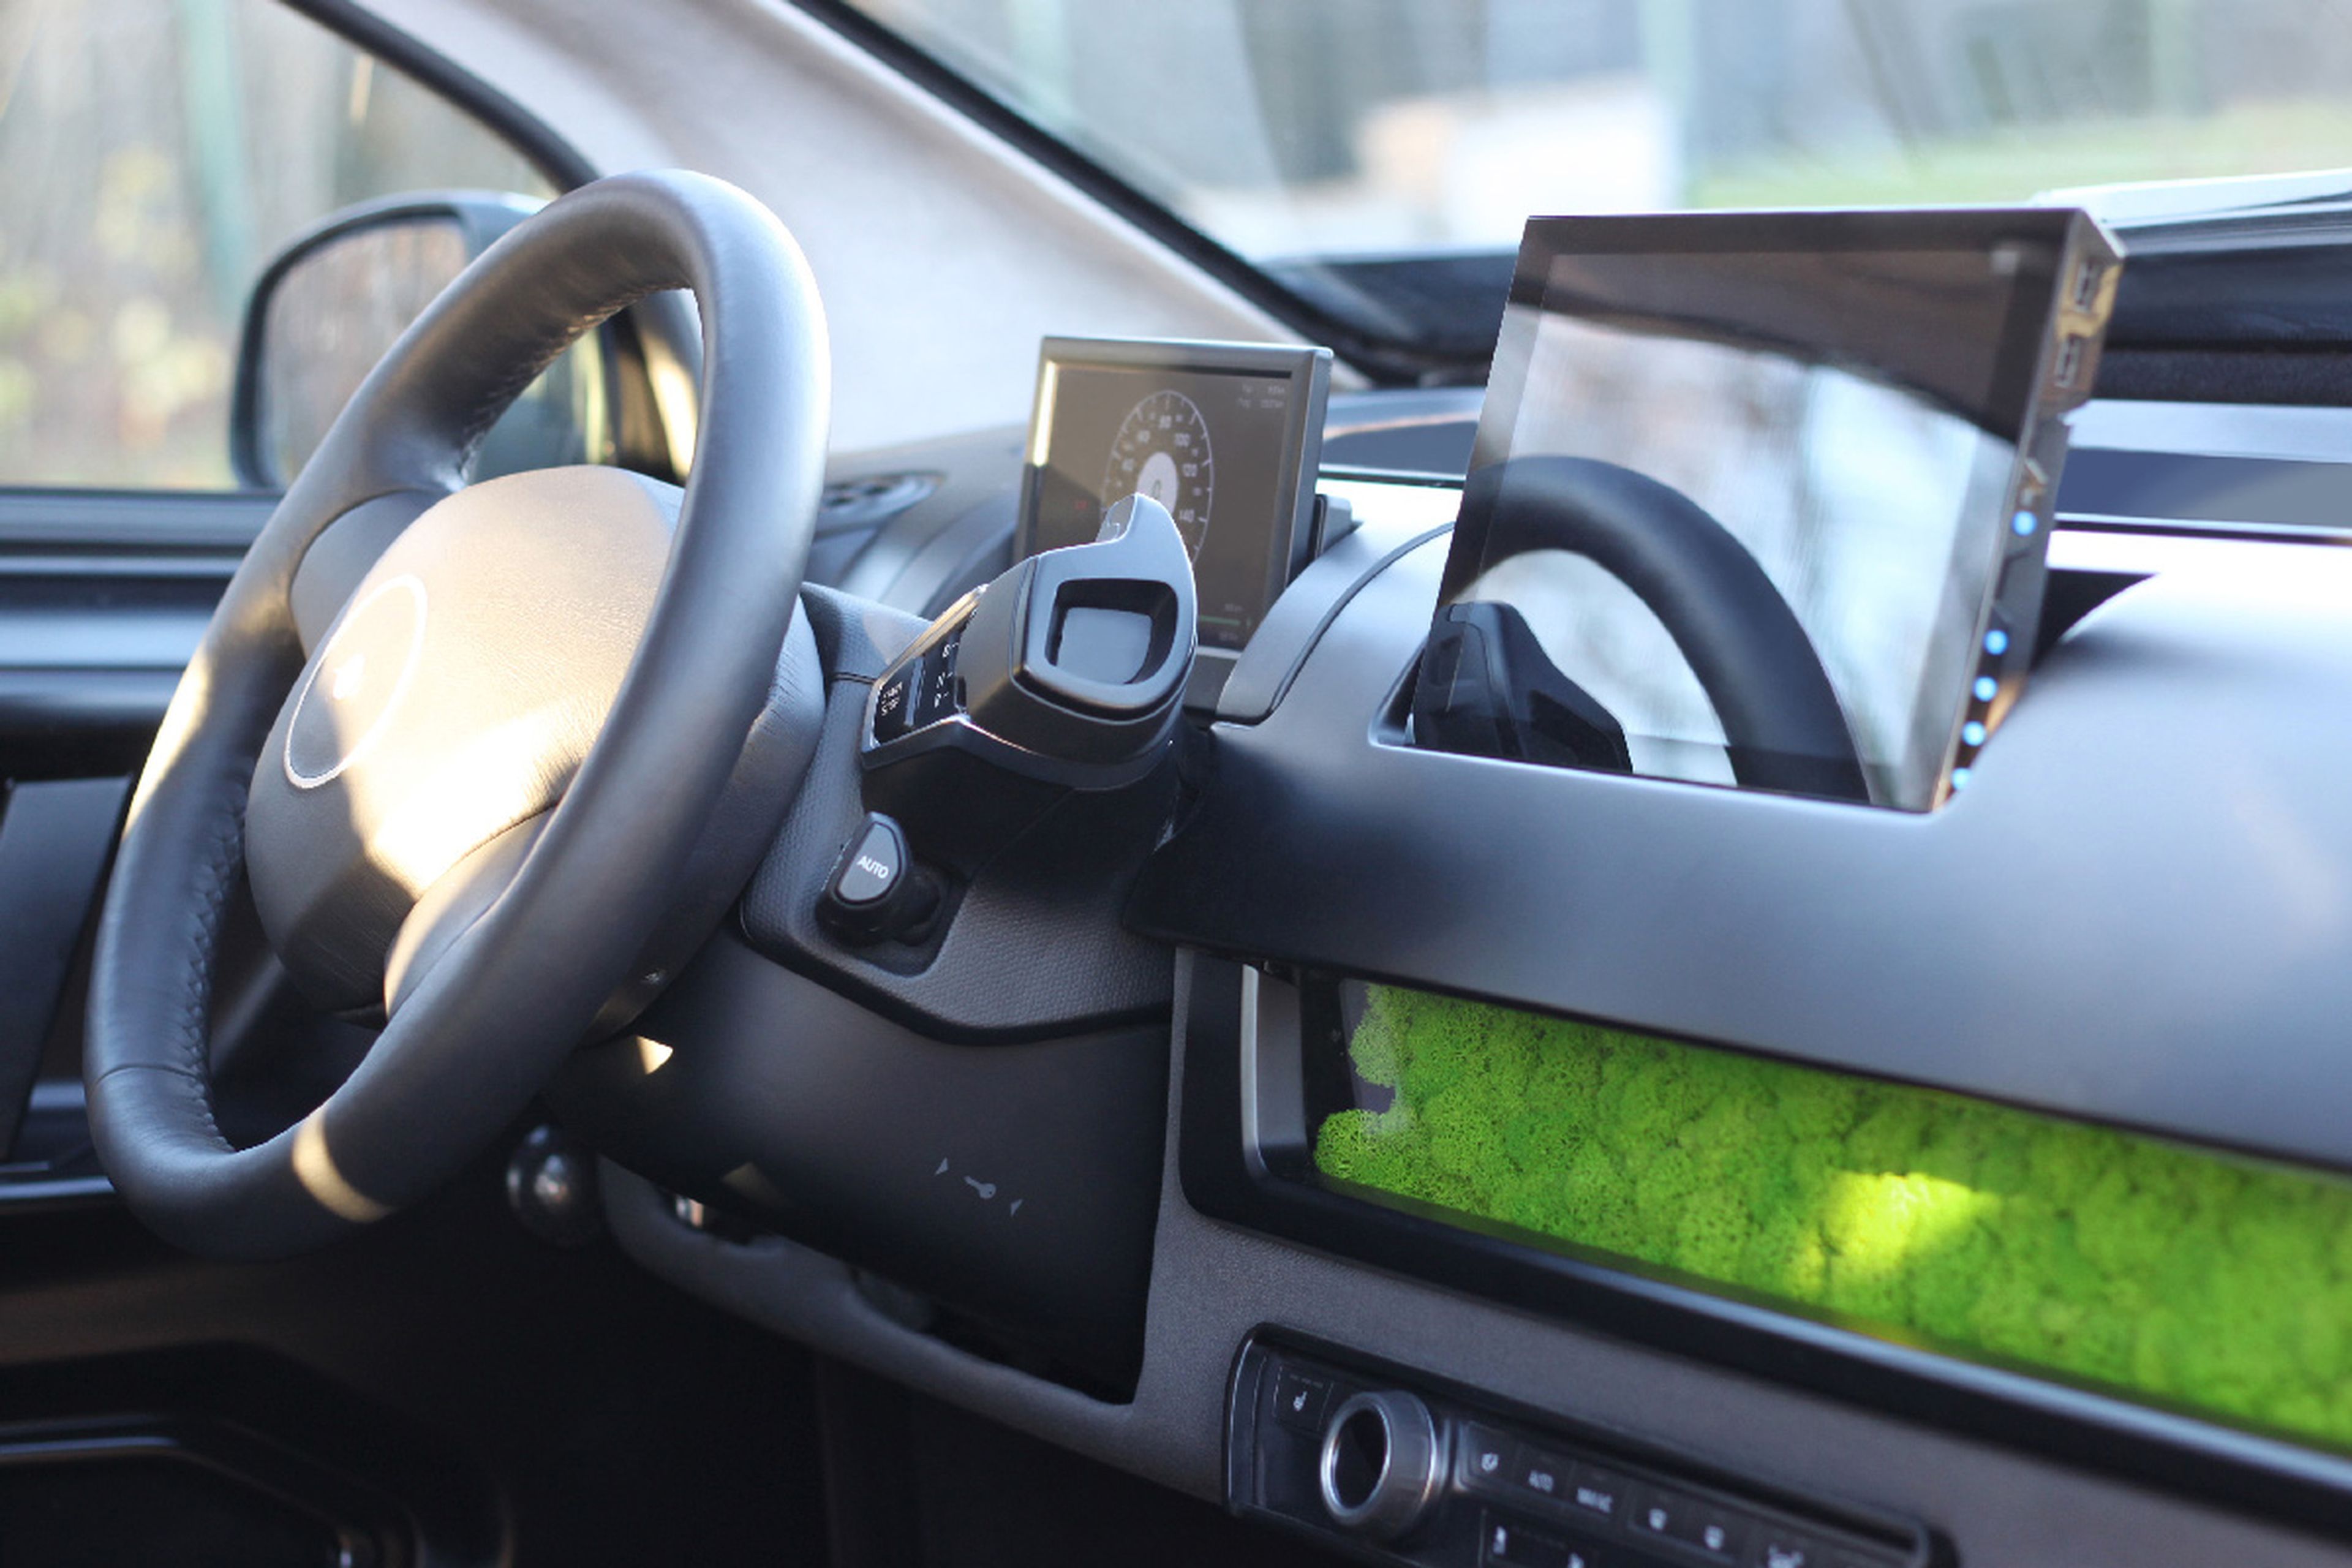 El interior del Sono Scion usa algunos componentes del BMW i3, como los botones de la radio o el cambio.